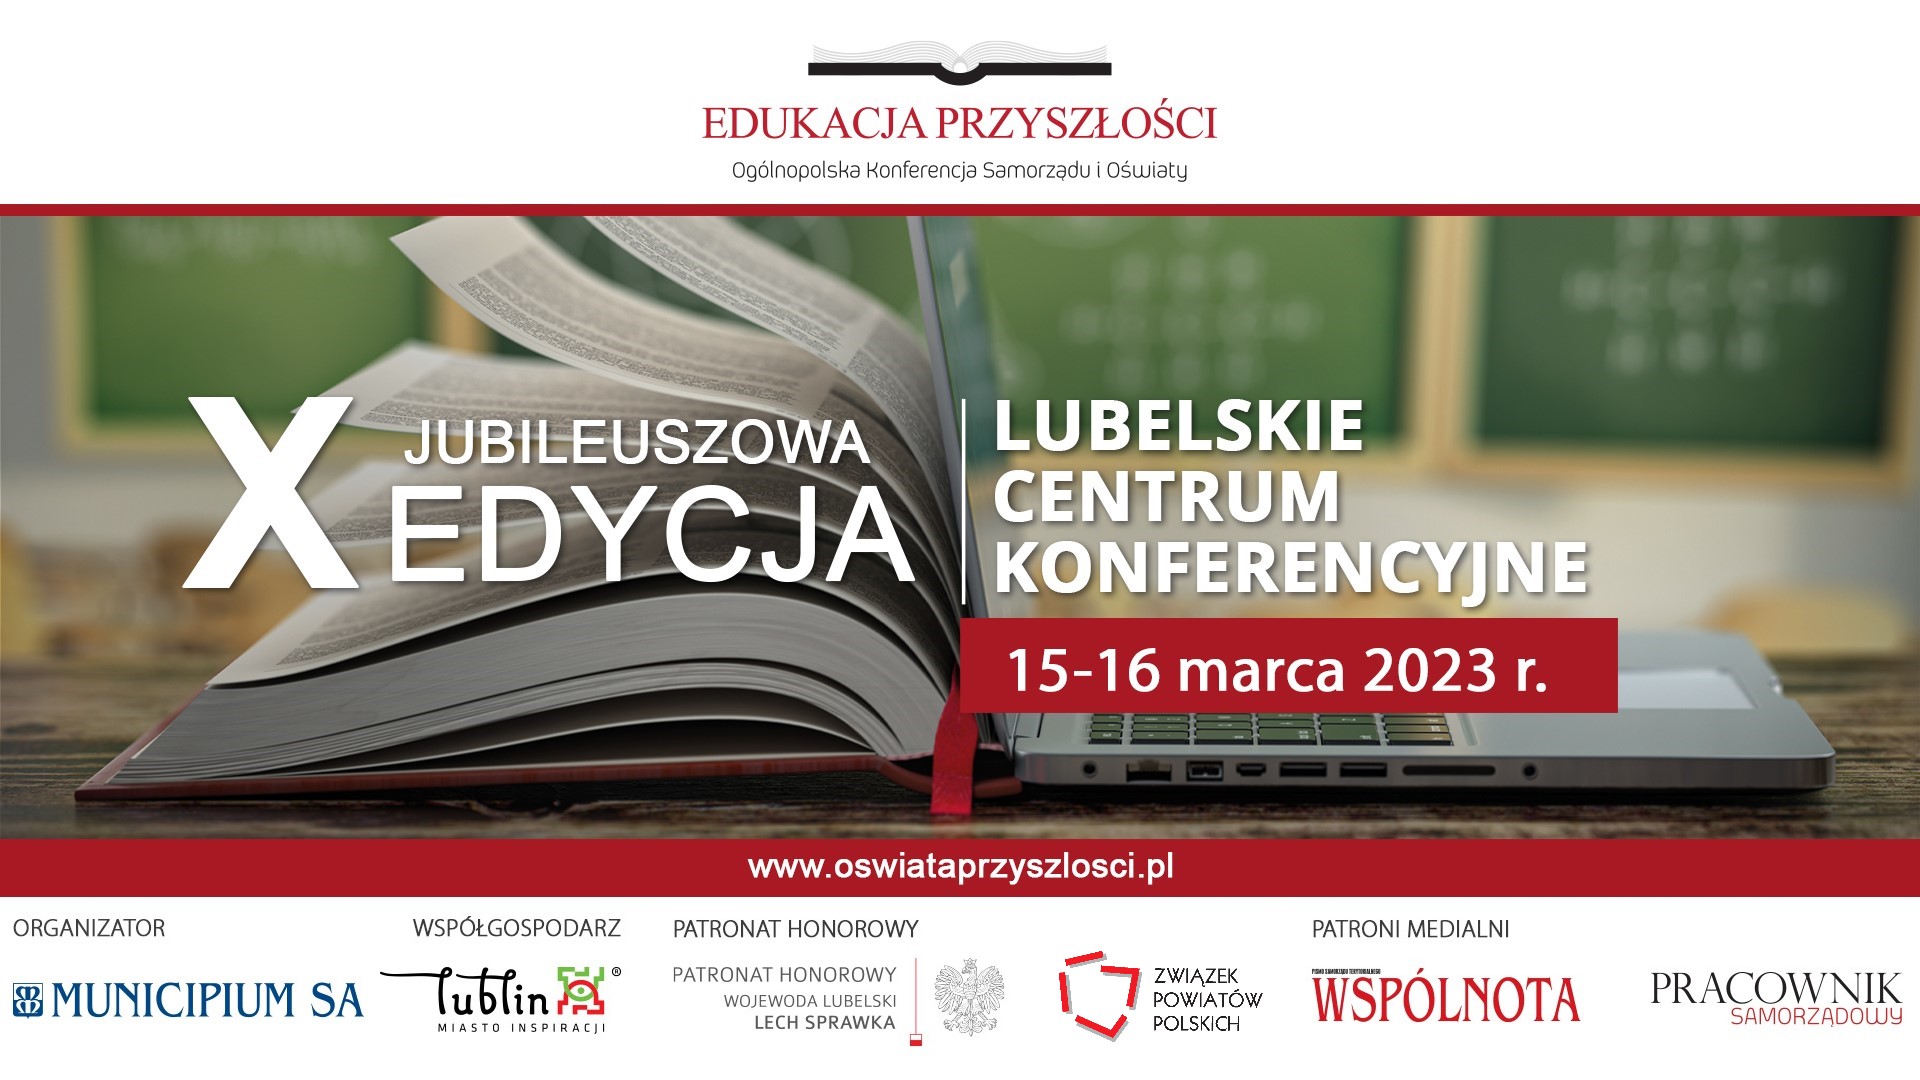 X edycja Ogólnopolskiej Konferencji Samorządu i Oświaty EDUKACJA PRZYSZŁOŚCI, 15-16 marca 2023 r., Lublin